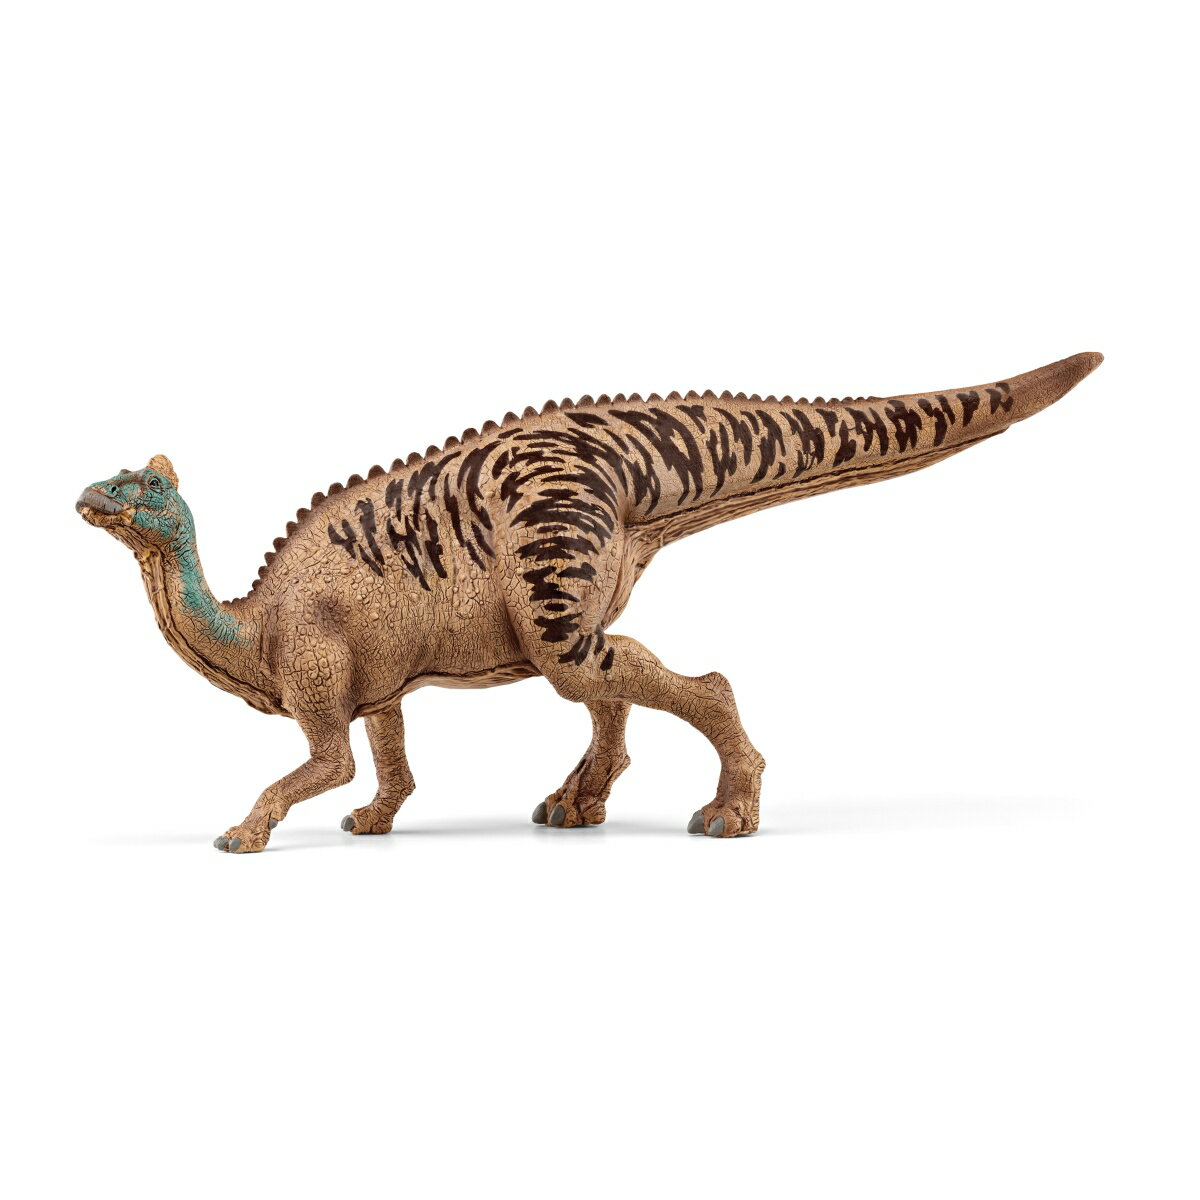 【シュライヒ】 エドモントサウルス Dinosaurs／ダイナソー 15037